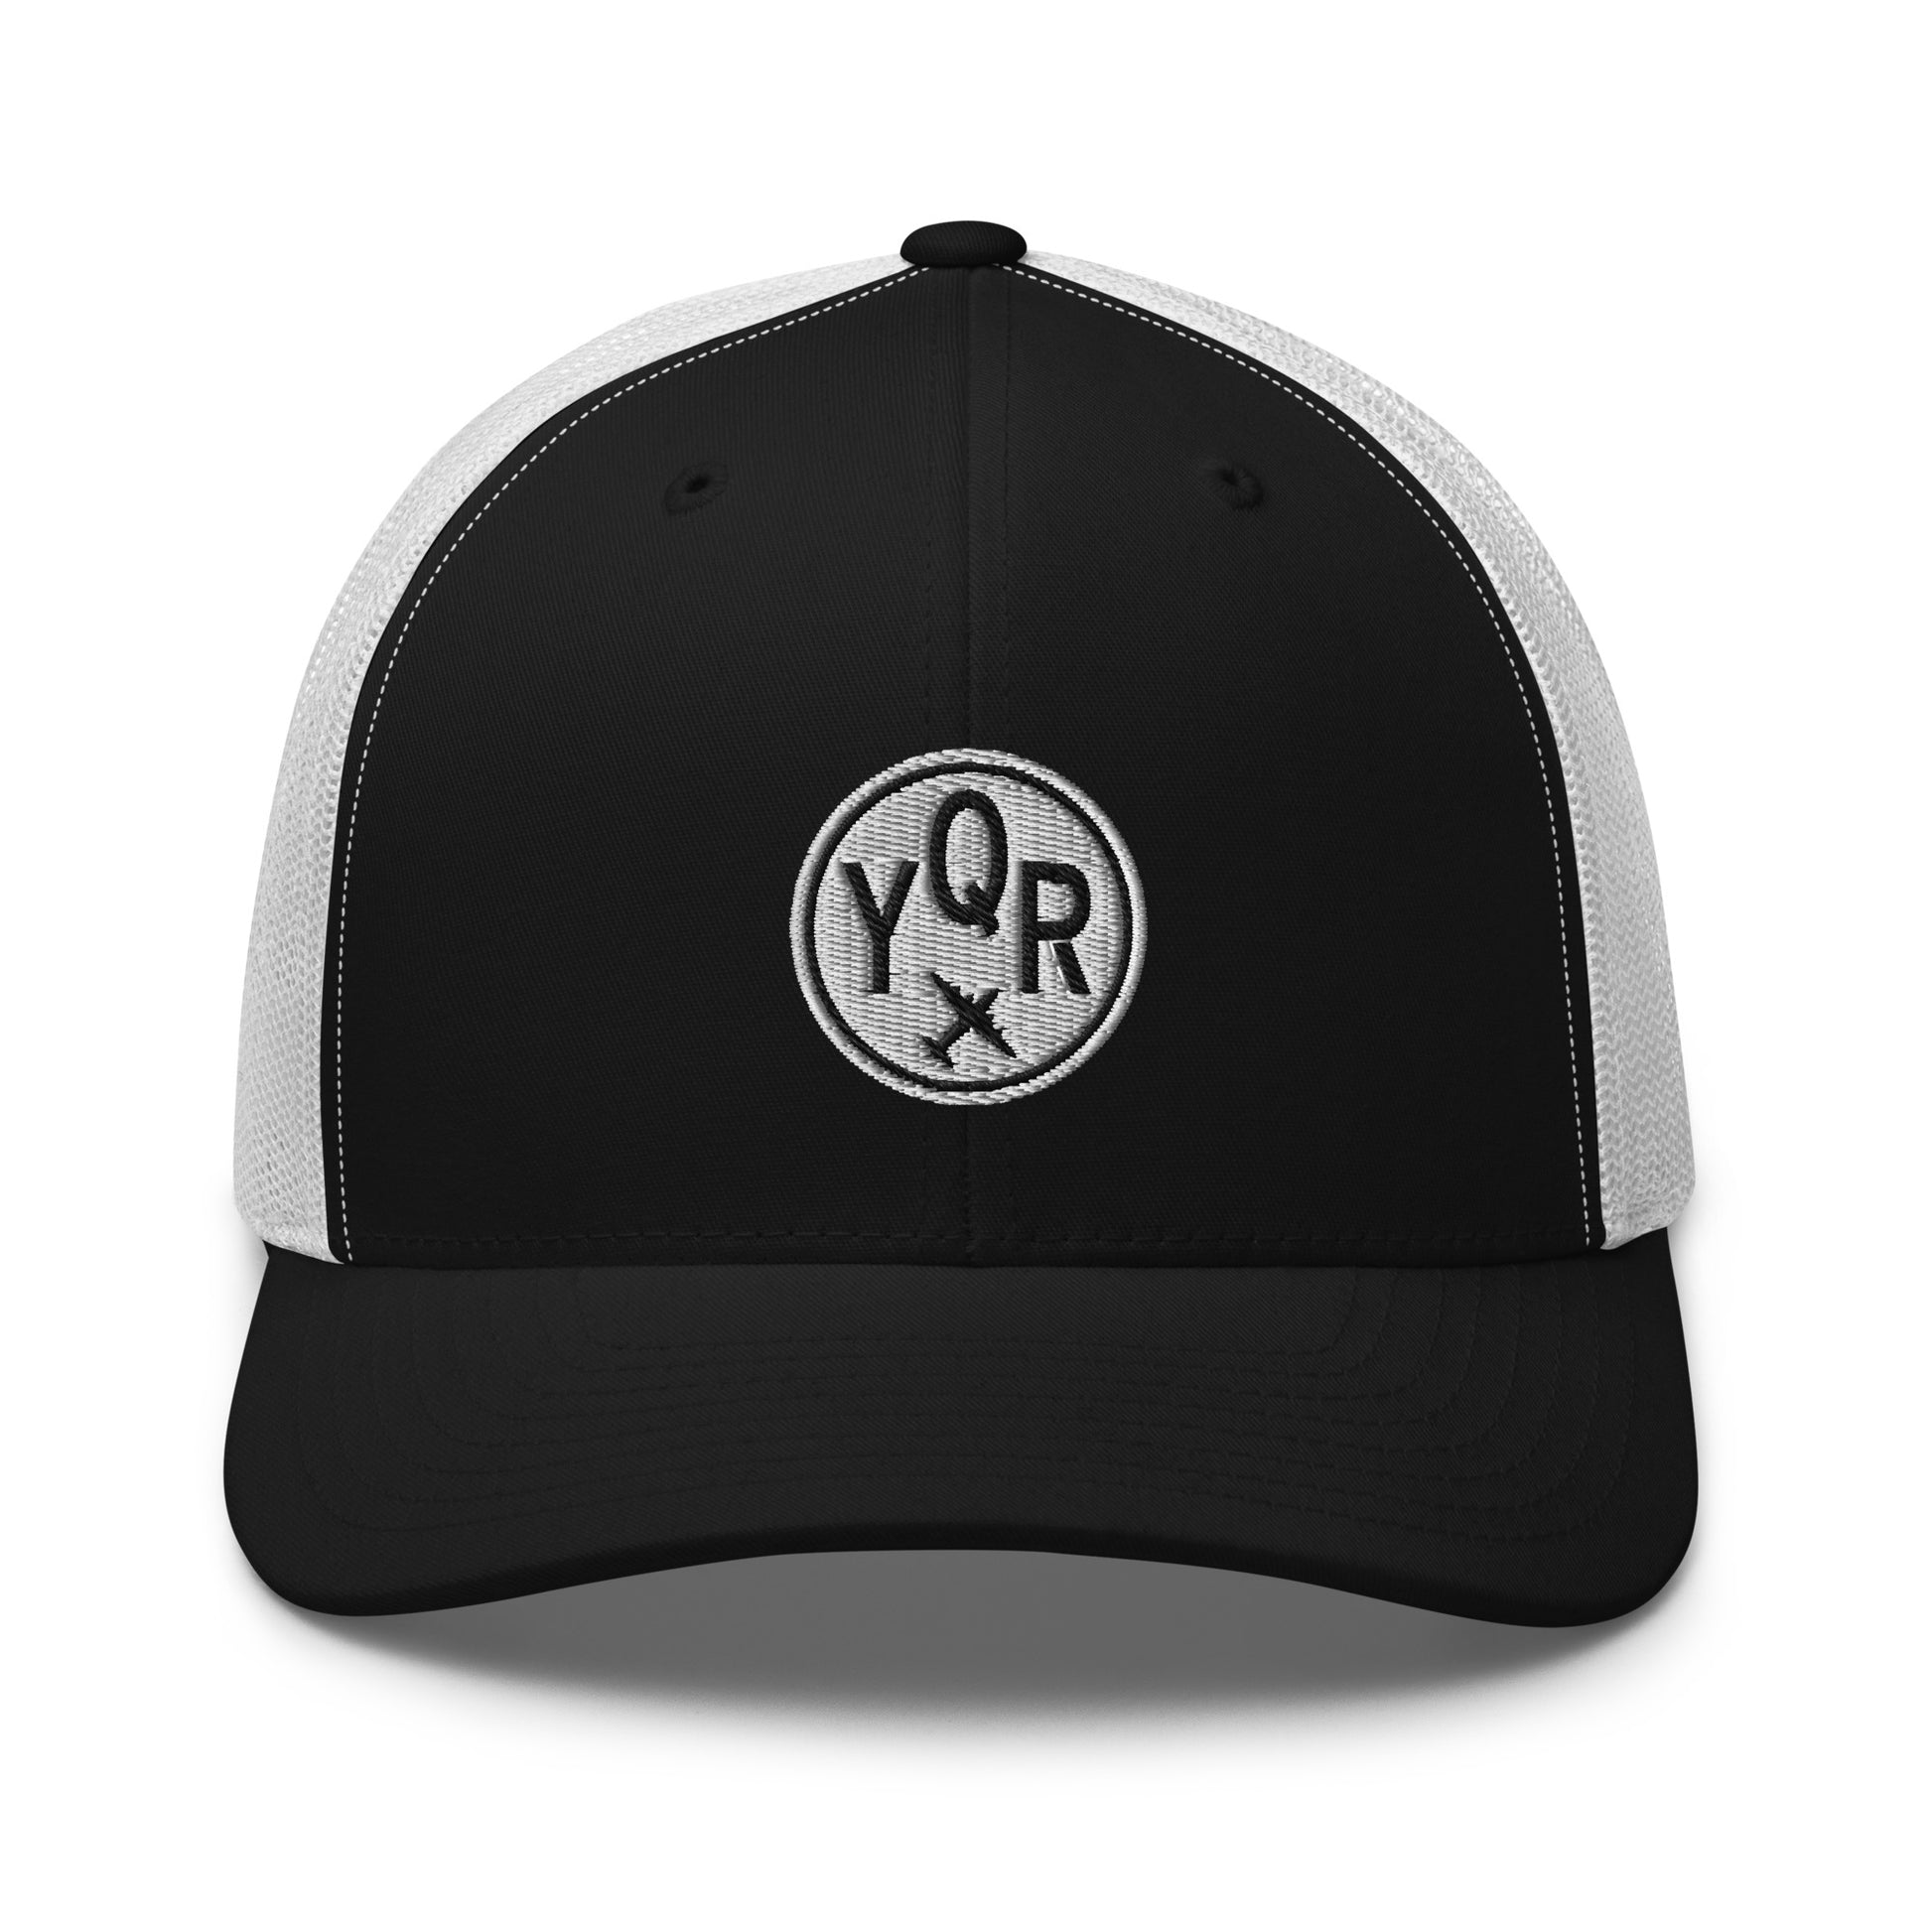 Roundel Trucker Hat - Black & White • YQR Regina • YHM Designs - Image 09